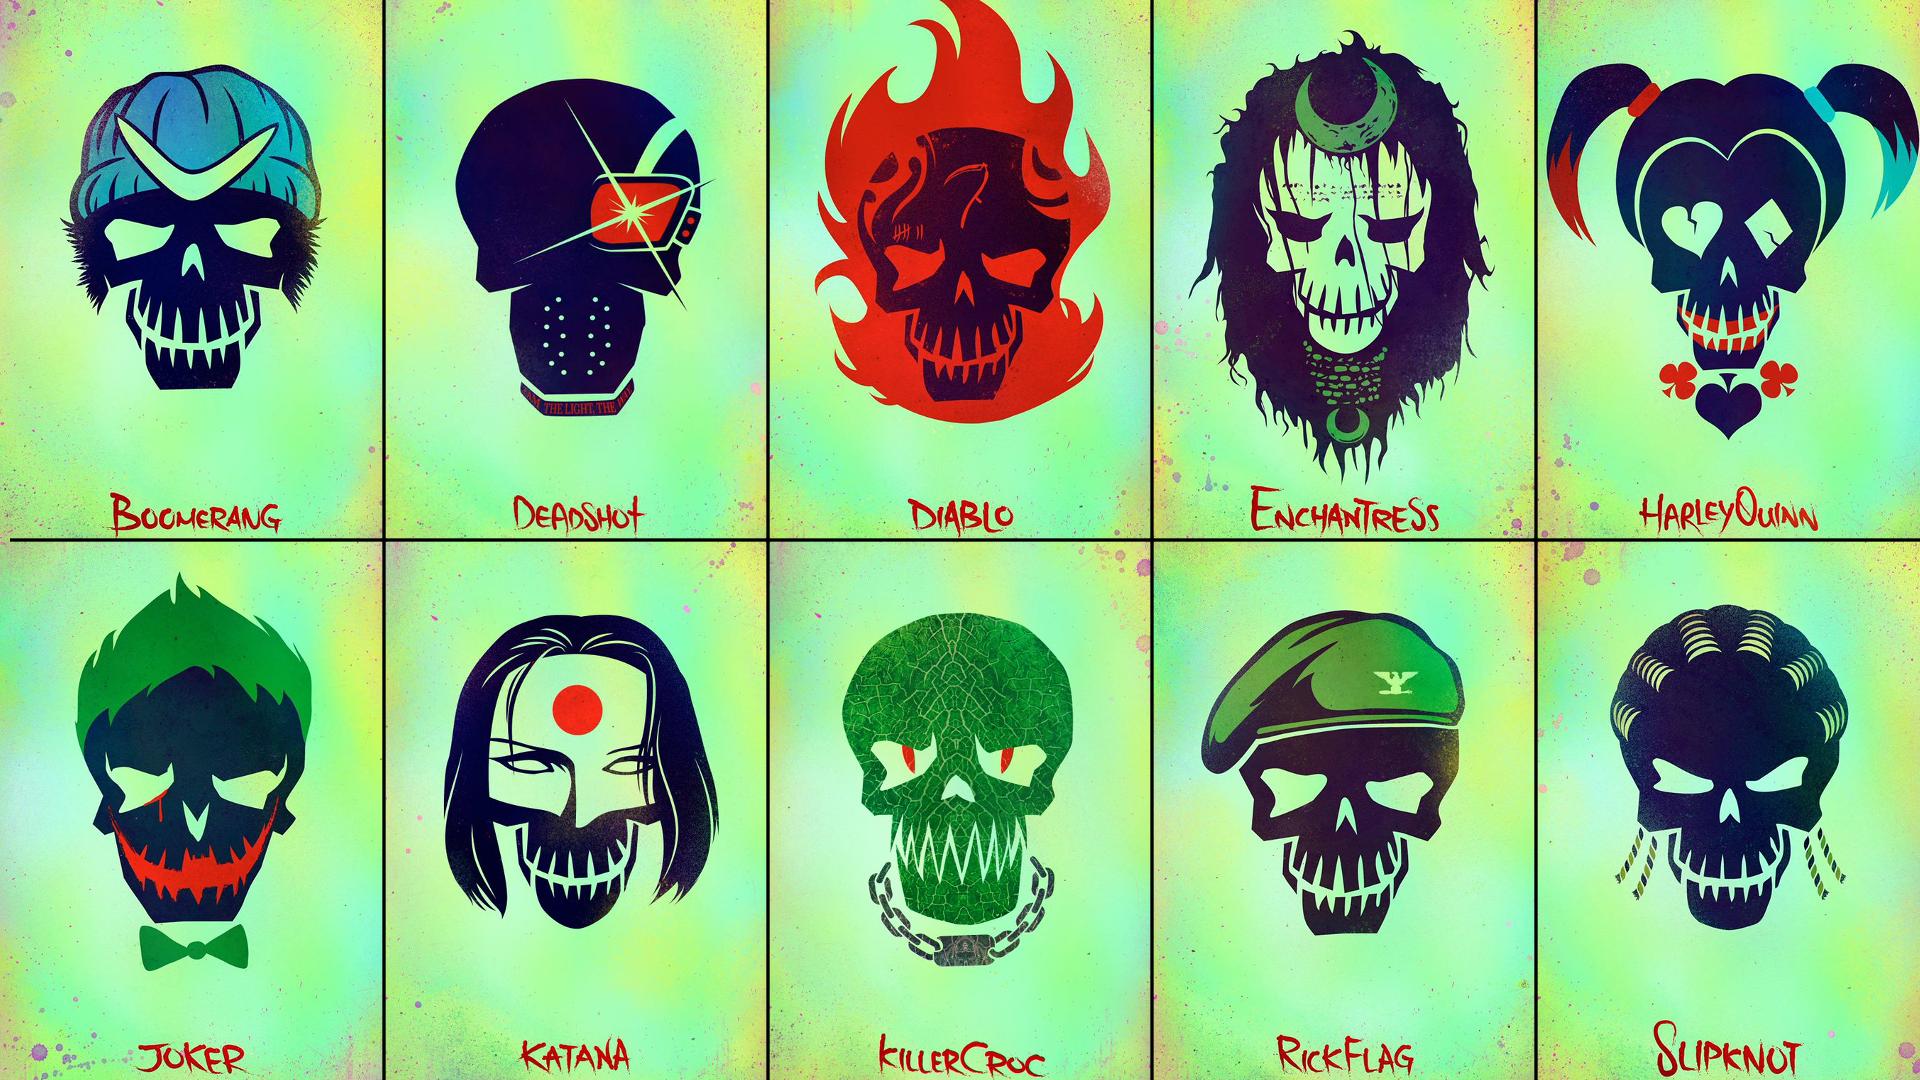 Suicide squad, heads, emblem, logo